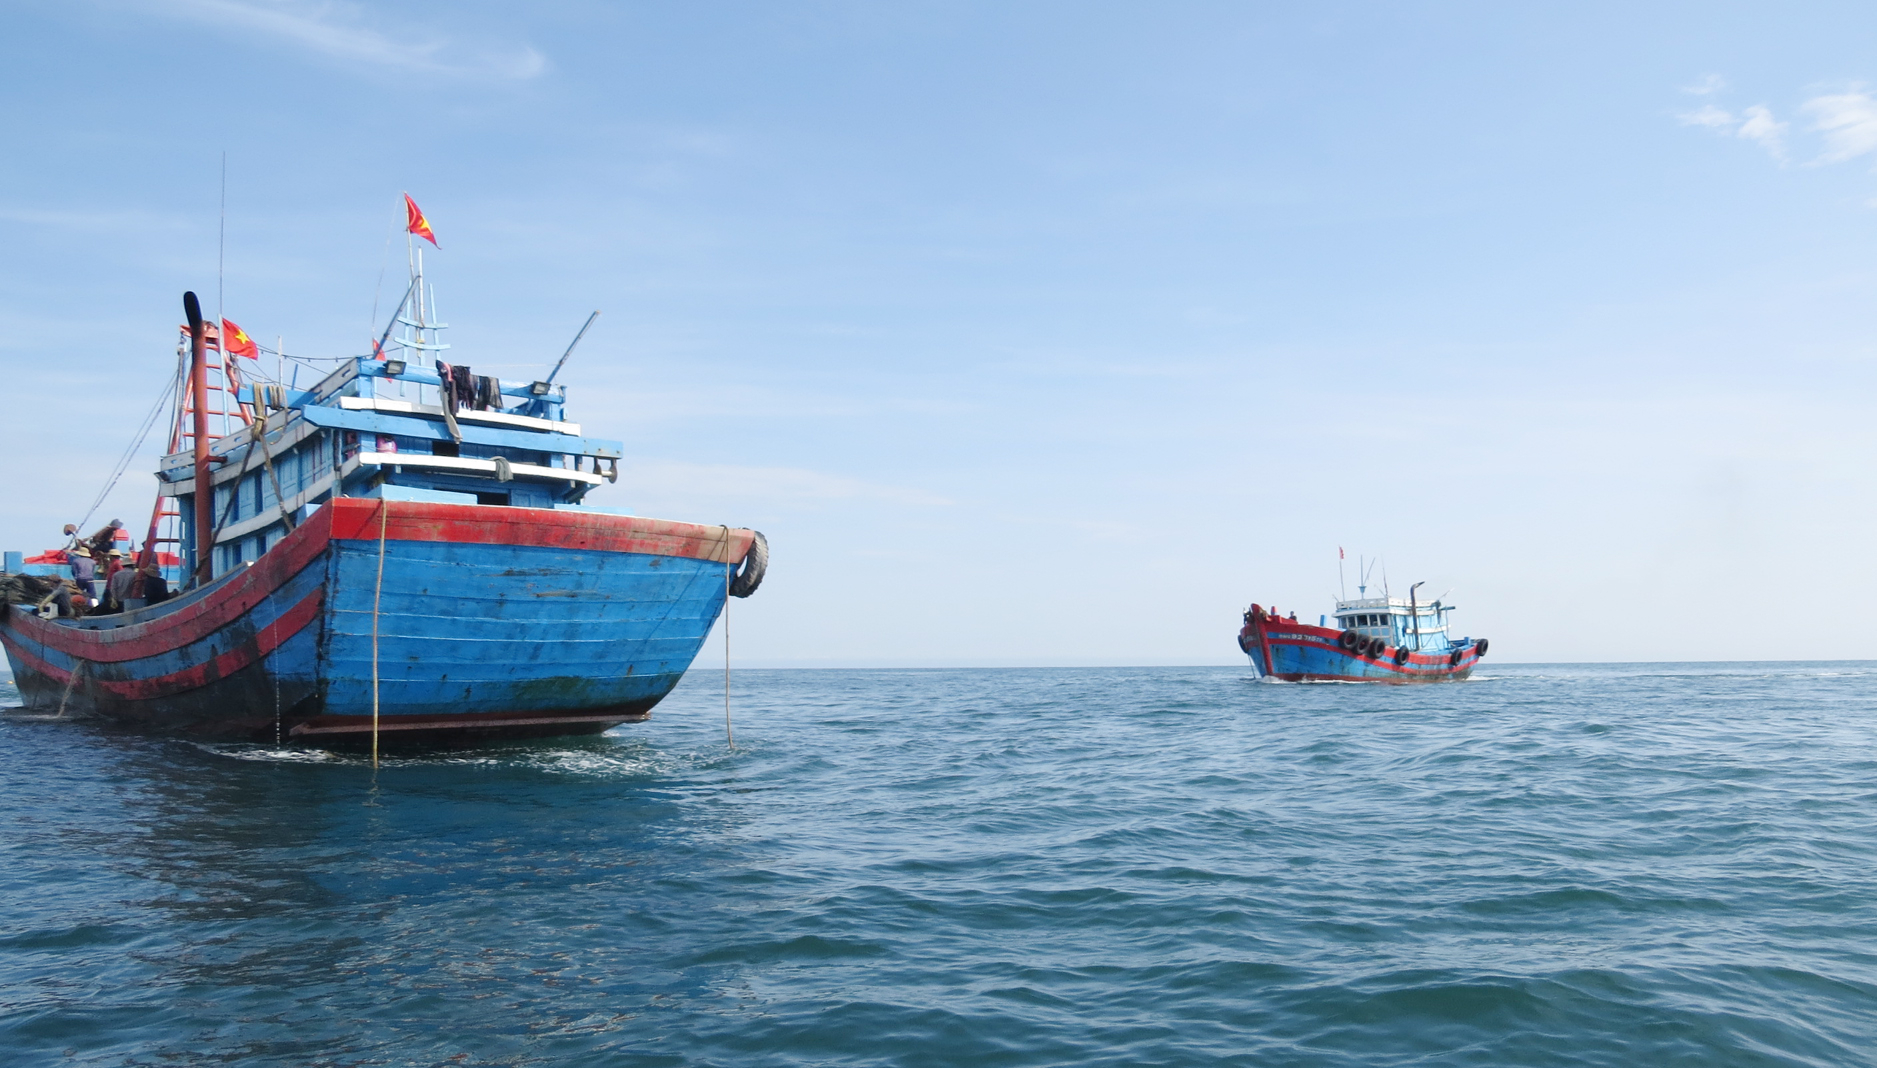 Tình trạng tàu đánh bắt giã cào đôi hoạt động trái phép ở vùng biển Quảng Bình đã được ngăn chặn. Ảnh: T. Phùng.